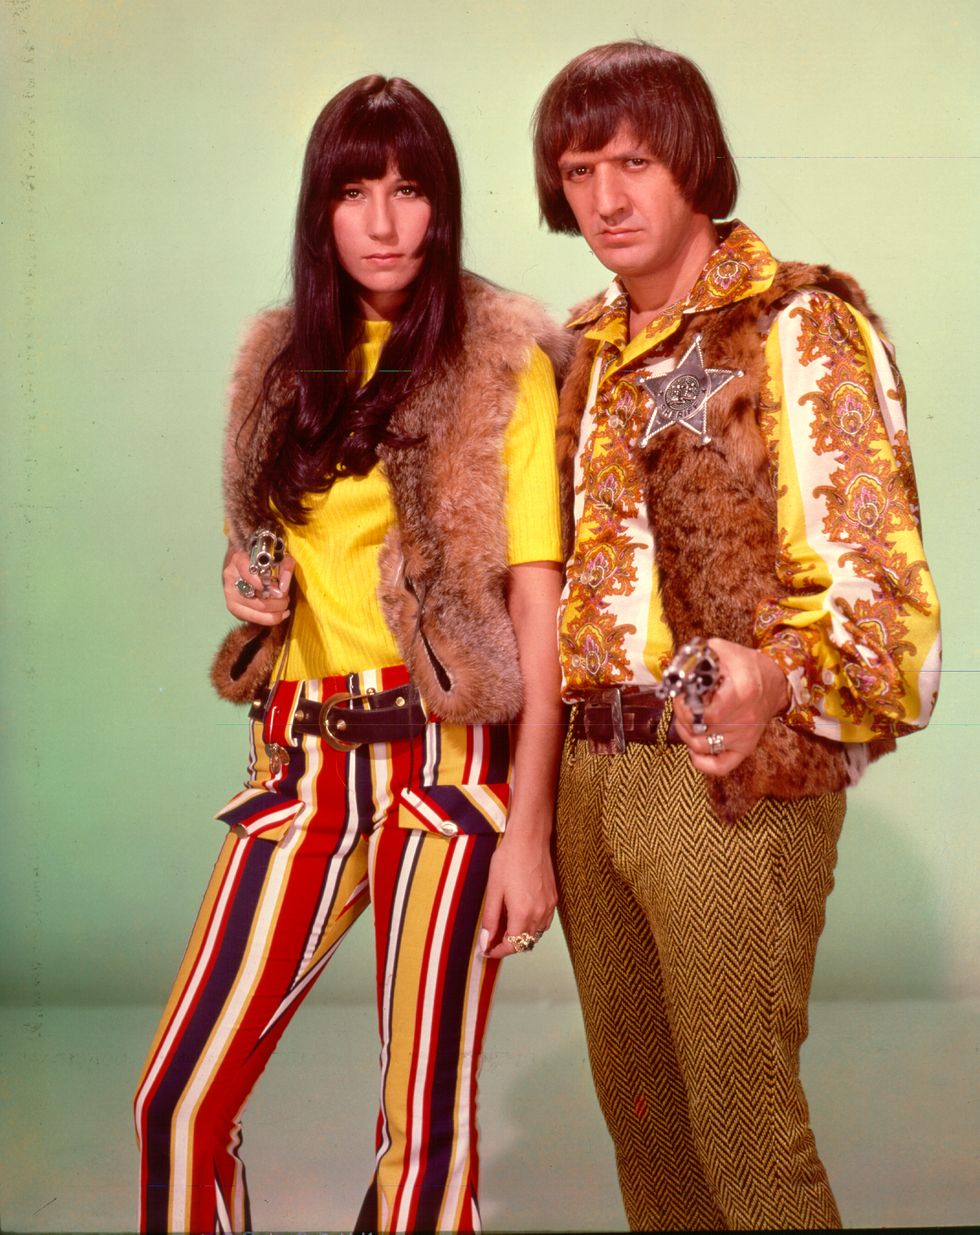 Cher and Sonny Bono, circa 1968